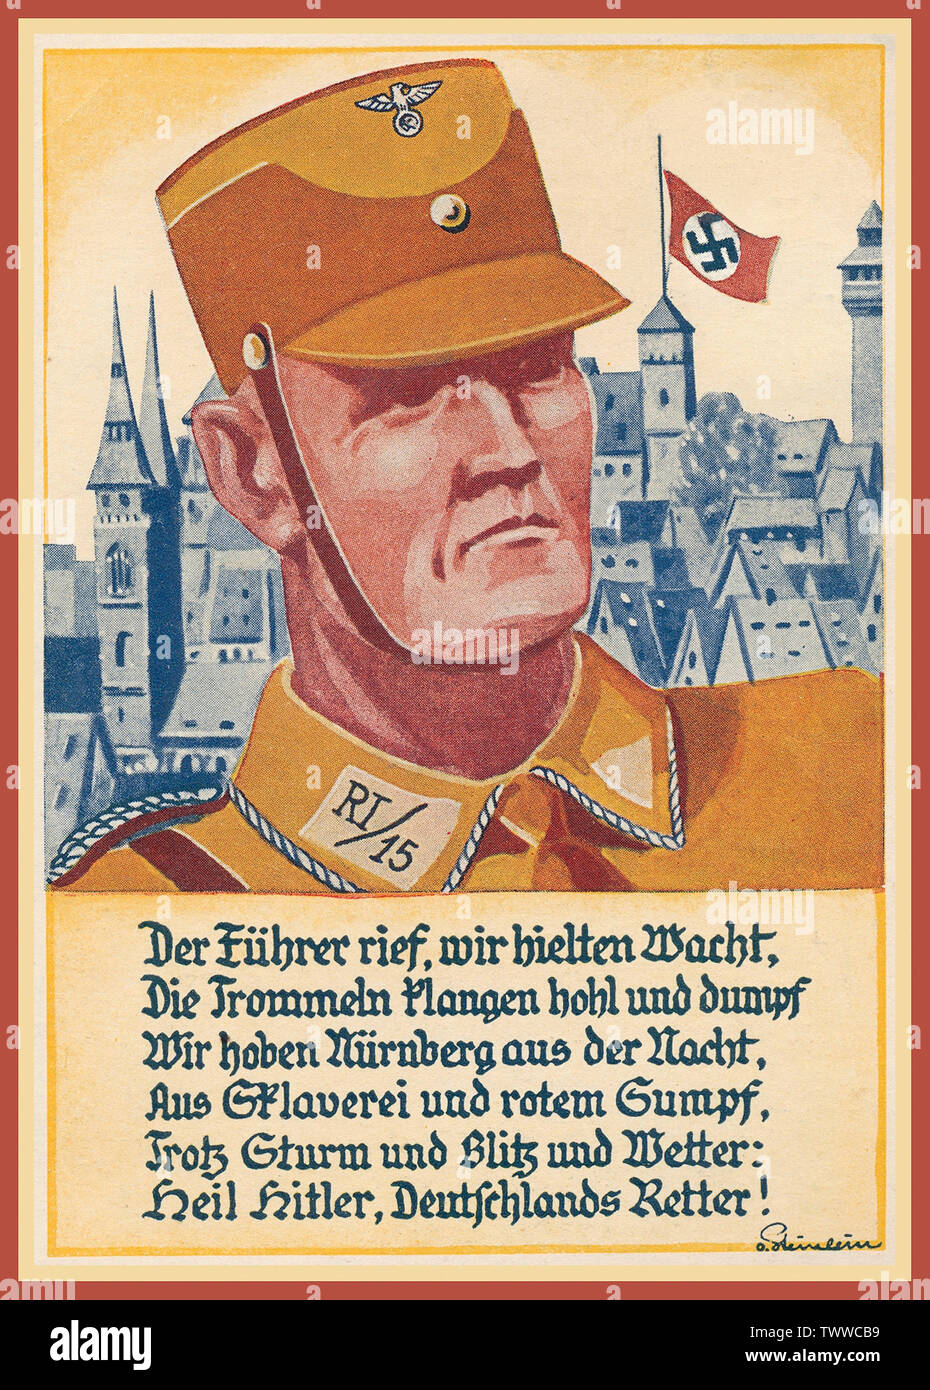 Vintage Postal Póster de propaganda nazi de 1933, "día del partido nazi de 1933" de Nuremberg Bandera esvástica 'Reich parte Rally 1933' 'Kopfbild SA-Mann" y diciendo que "el Führer pidió, nos vigilaban ...". "Nuremberg 2.9.33". "Heil Hitler Alemanias Salvador' Foto de stock